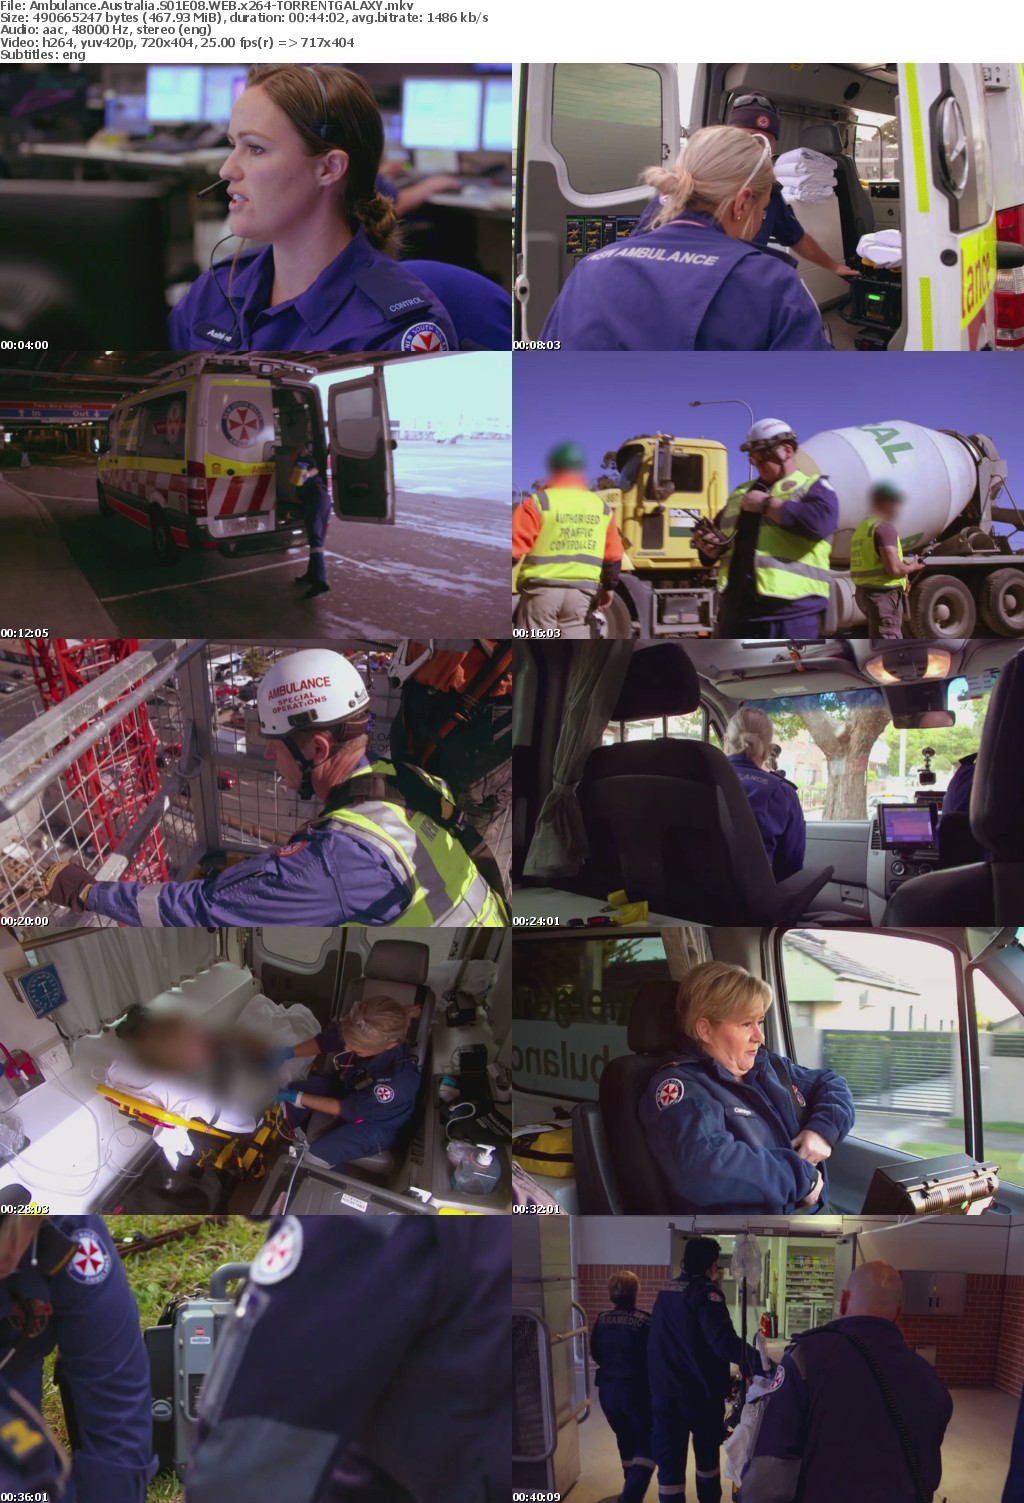 Ambulance Australia S01E08 WEB x264-GALAXY